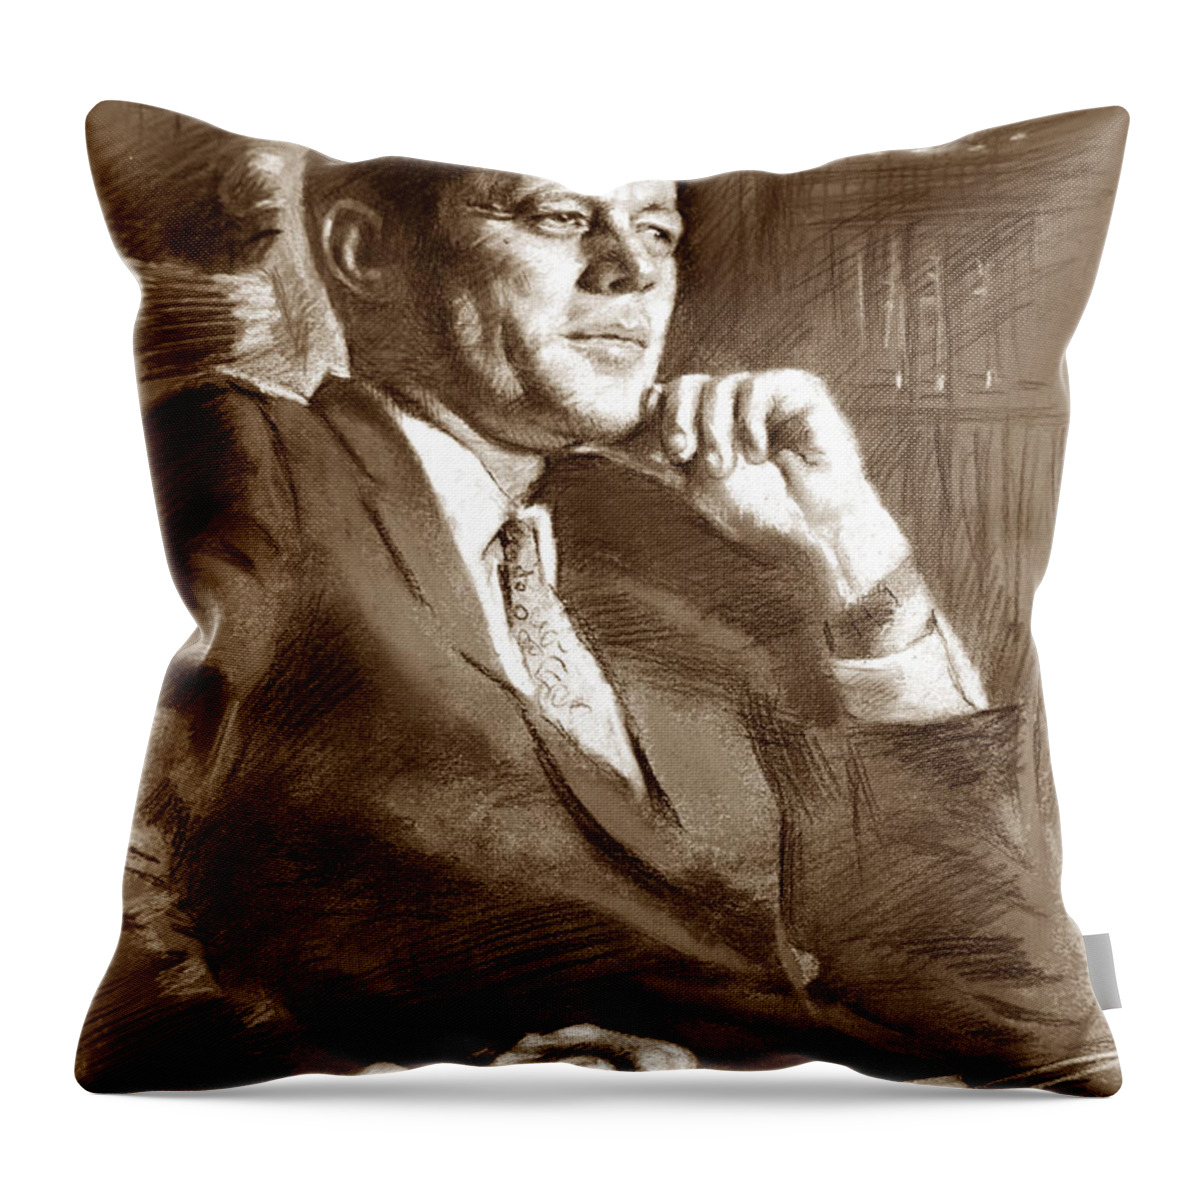 John Fitzgerald Kennedy Throw Pillow featuring the drawing John Fitzgerald Kennedy by Ylli Haruni